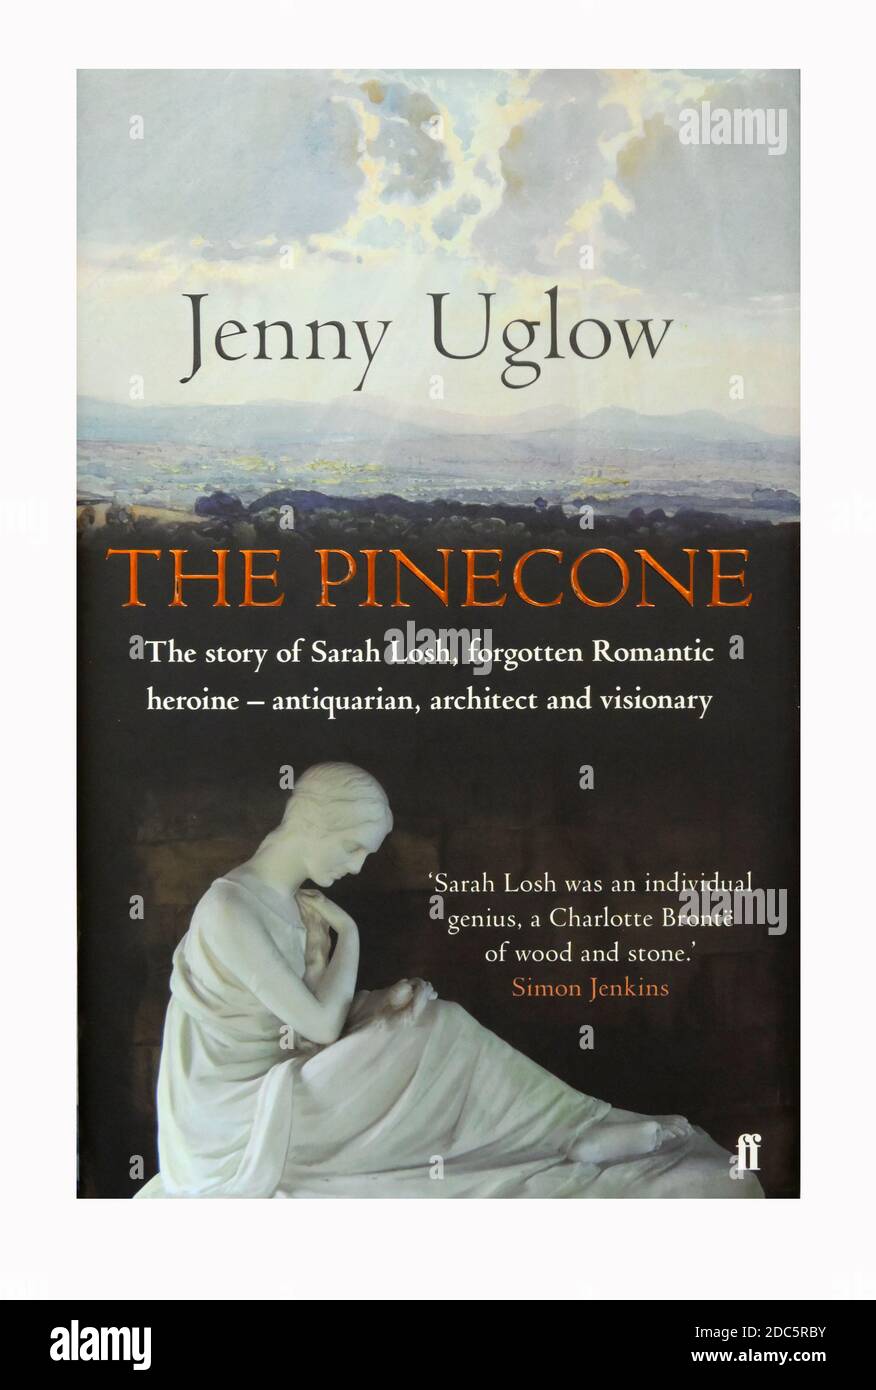 Couverture de livre 'la Pinecone', l'histoire de Sarah Losh, héroïque romantique oubliée, architecte et visionnaire, par Jenny Uglow. Banque D'Images